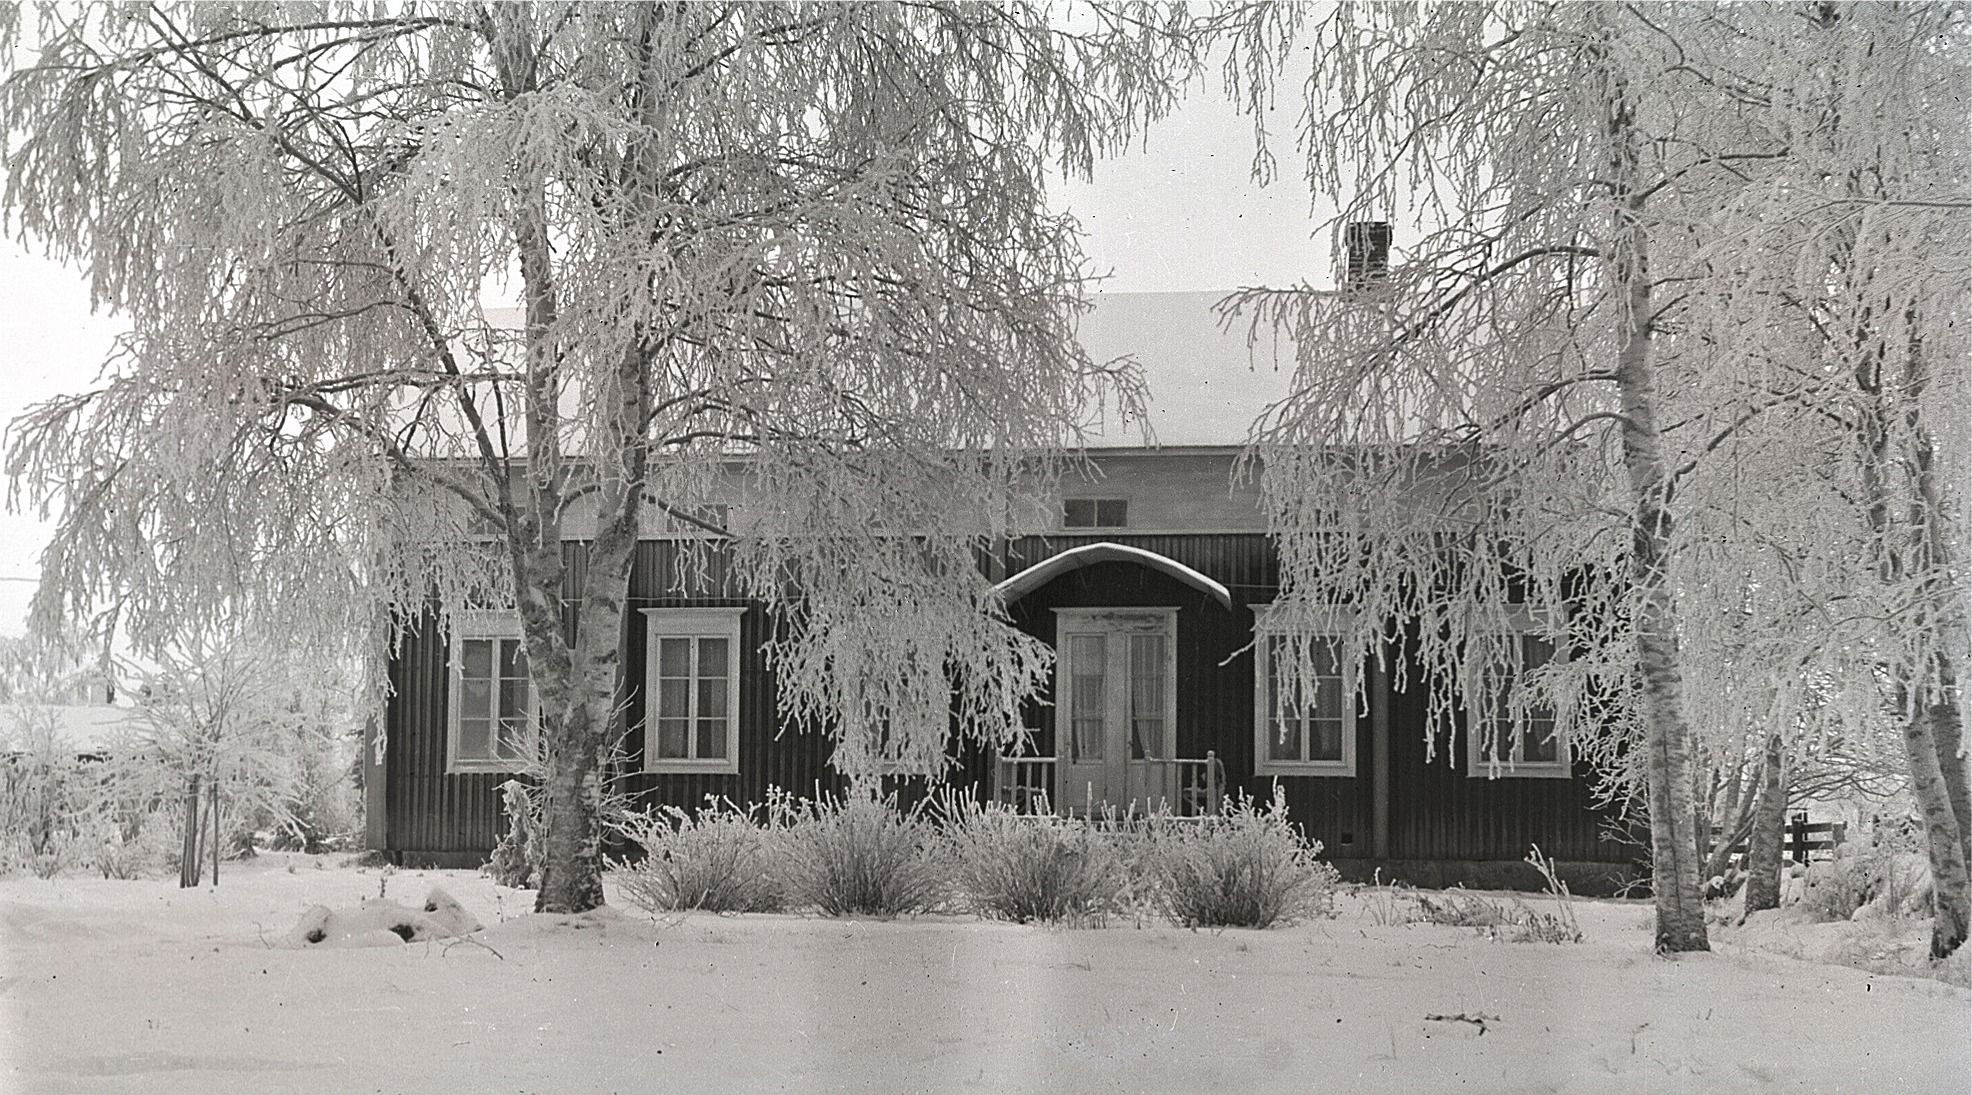 Södra folkskolans lärarbostäder fotograferad från vägen 1928. Läraren Selim Björses bodde i den norra bostaden, alltså till vänster på bilden och lärarinnan bodde i den södra bostaden.